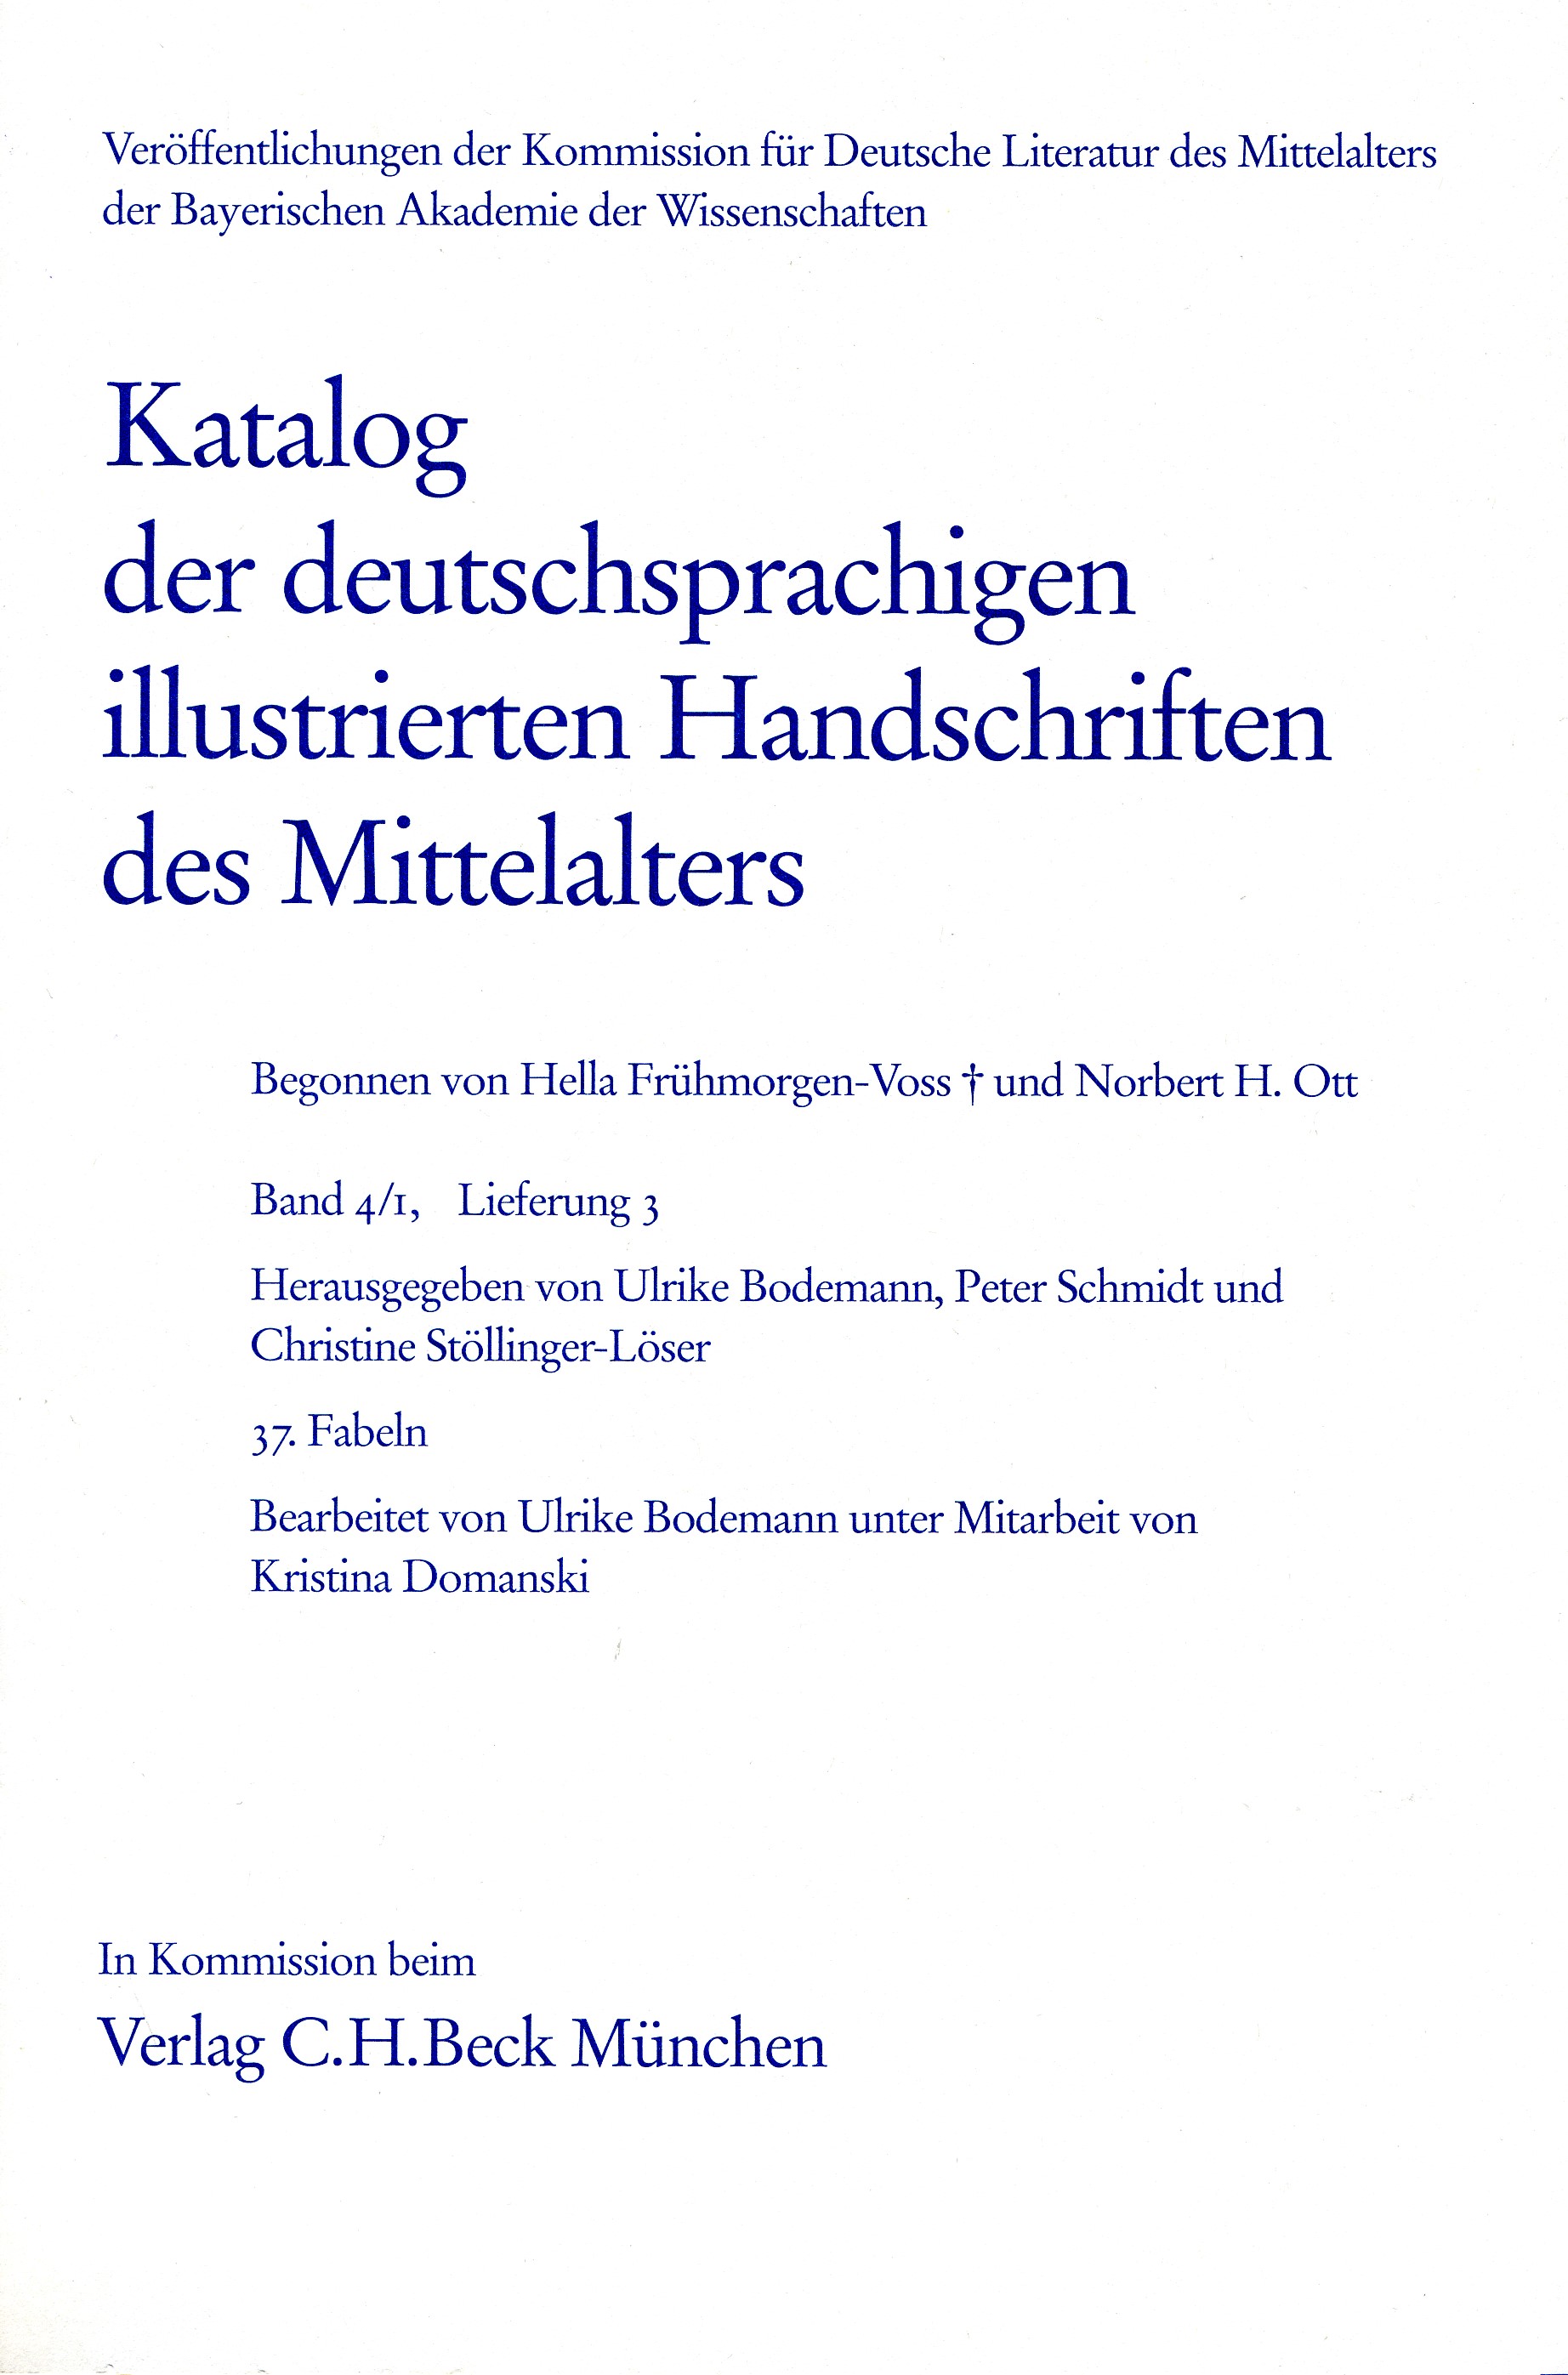 Cover: Bodemann, Ulrike /  Freienhagen-Baumgardt, Kristina / Schmidt, Peter, Katalog der deutschsprachigen illustrierten Handschriften des Mittelalters Band 4/1, Lfg.: 27-37